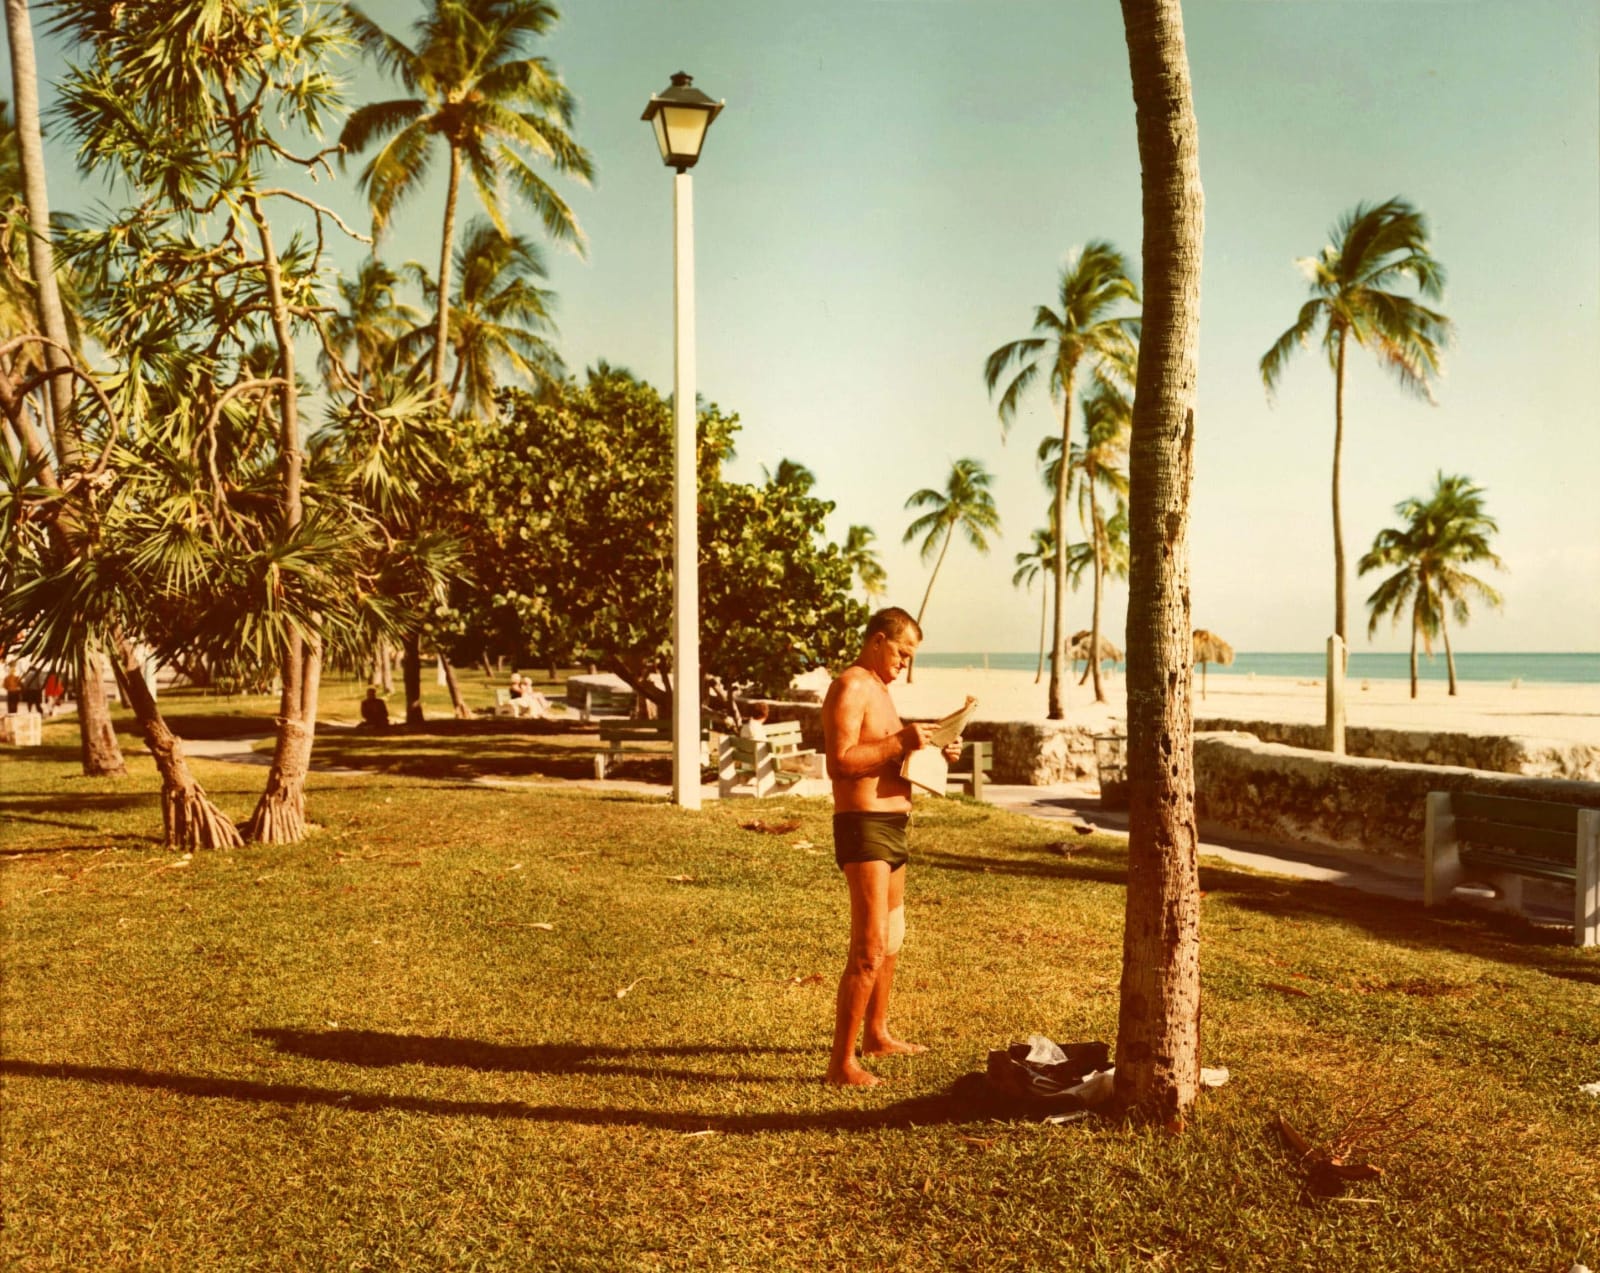 Stephen Shore, Miami Beach, Florida, November 13, 1977